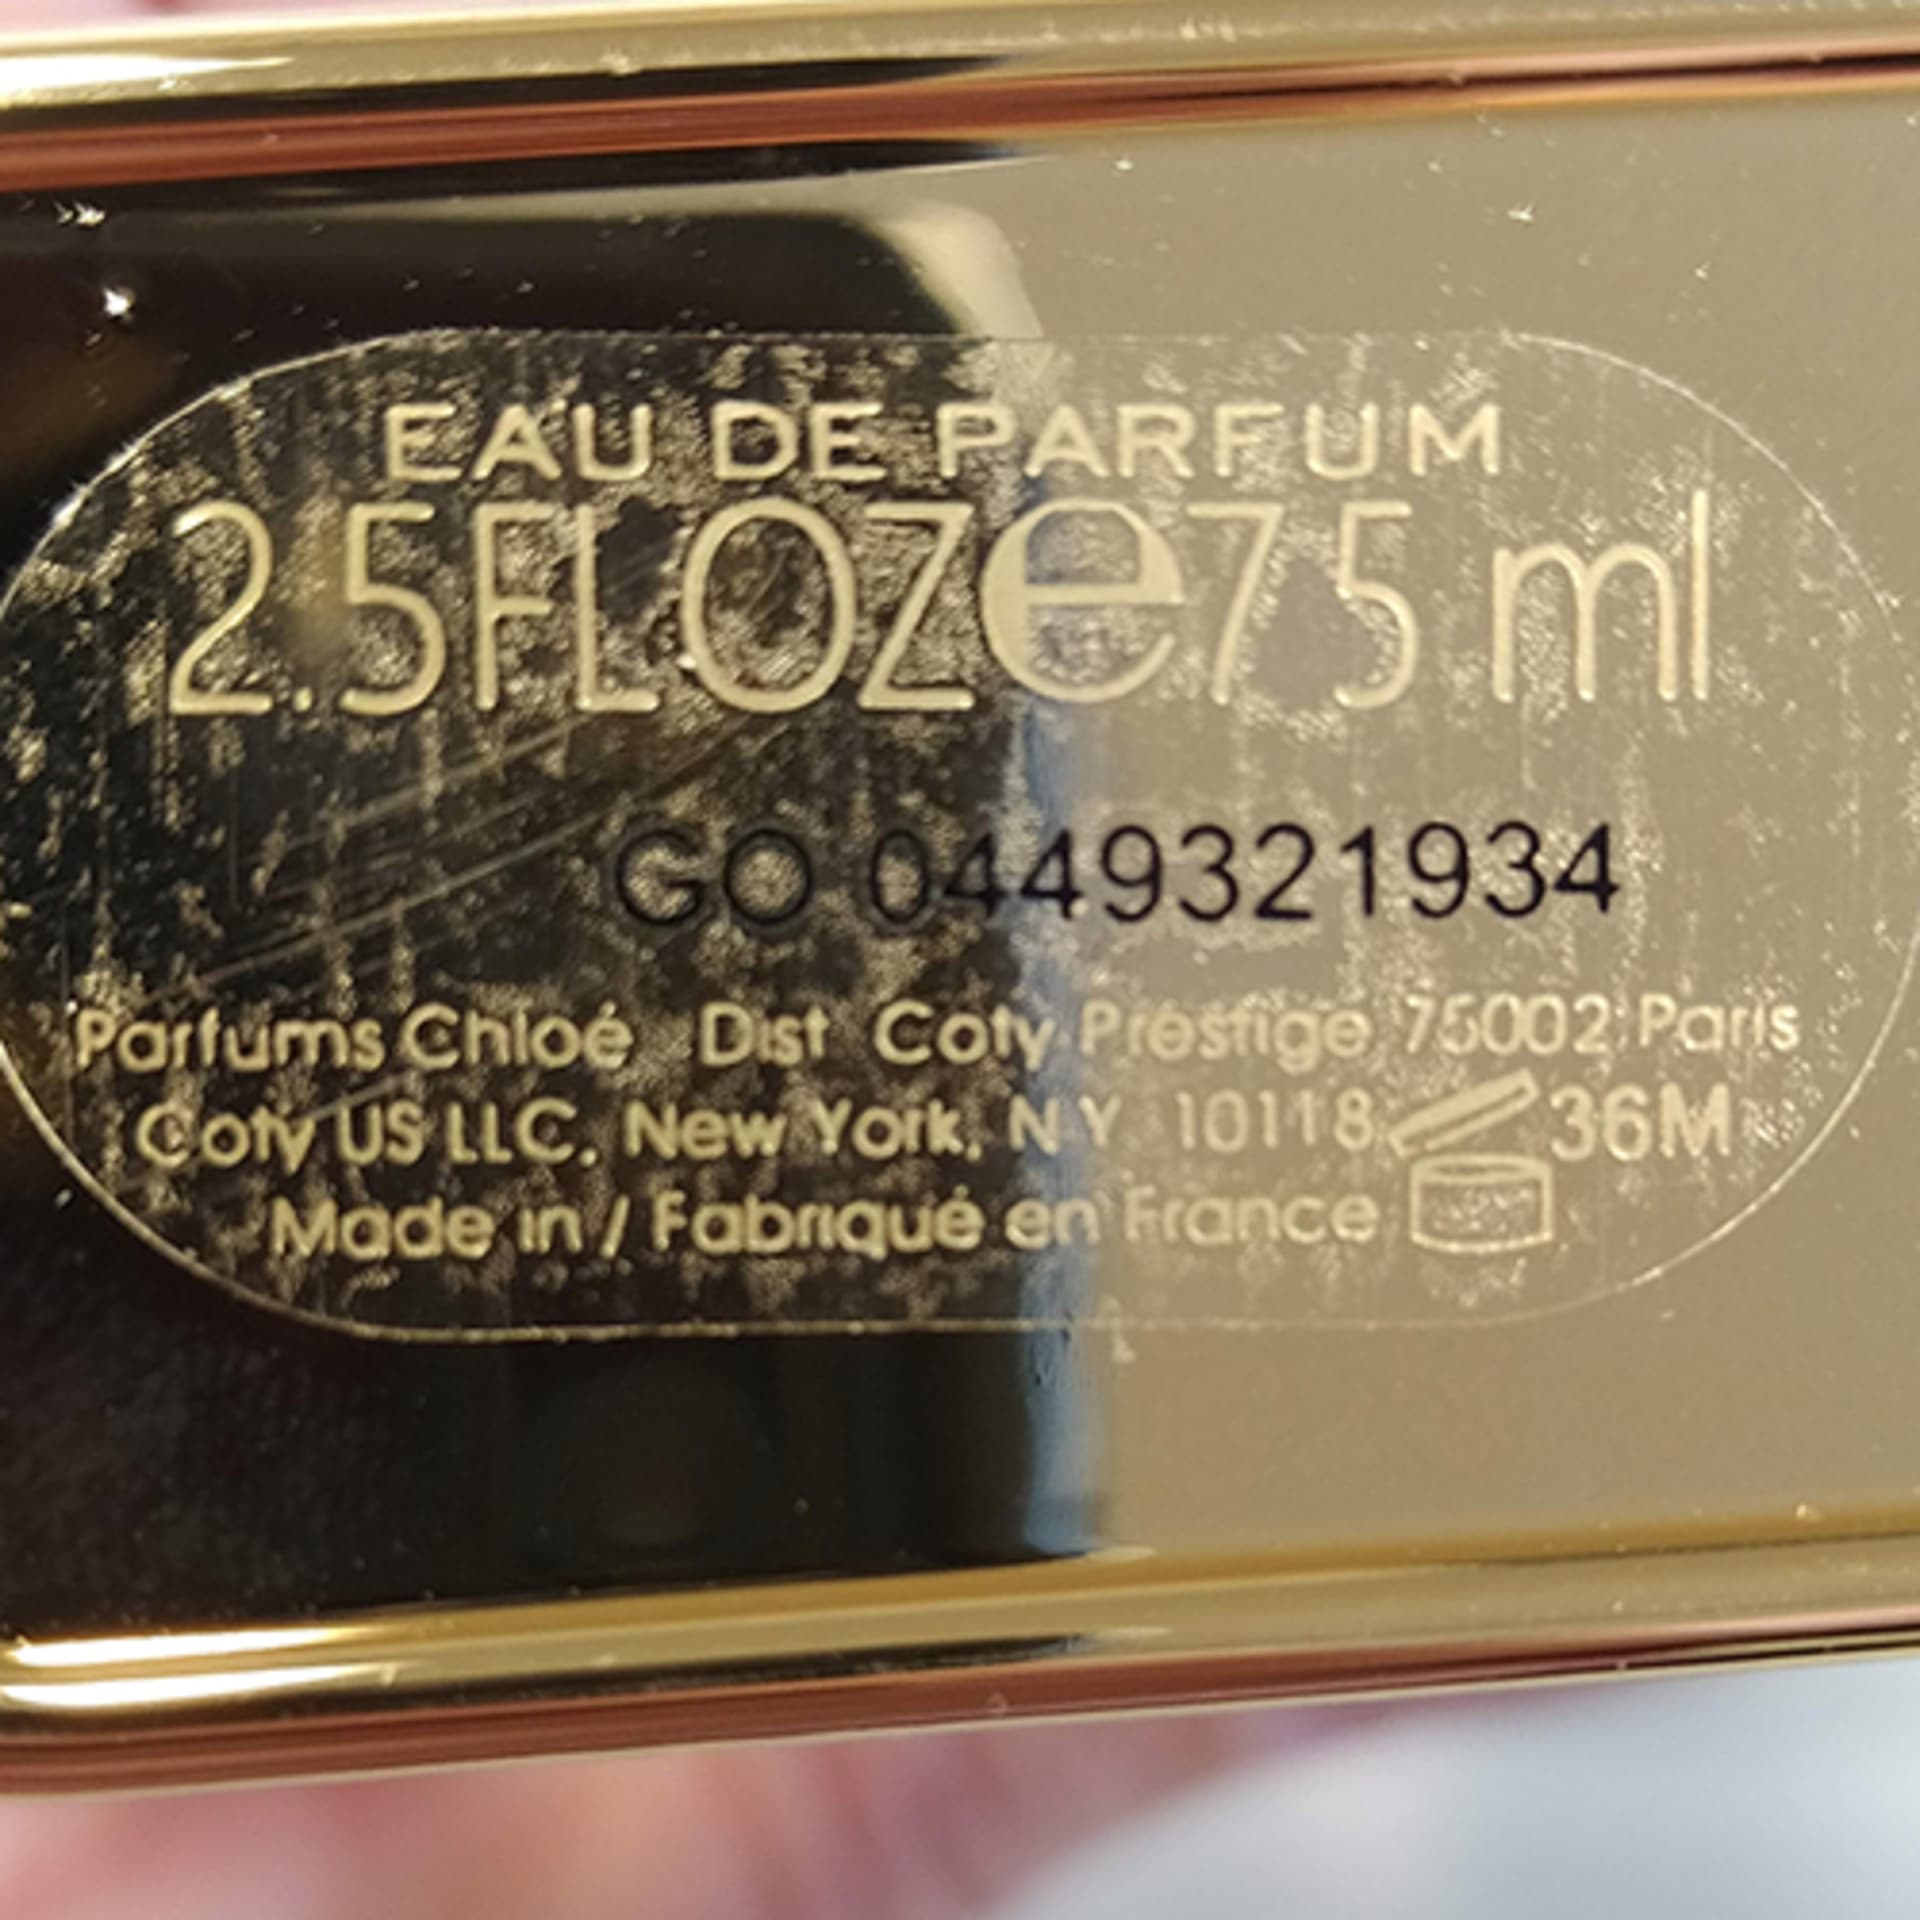 Látka je také v padělku parfému Chloé Love v šarži číslo GO 0449321934, který pochází z Francie.